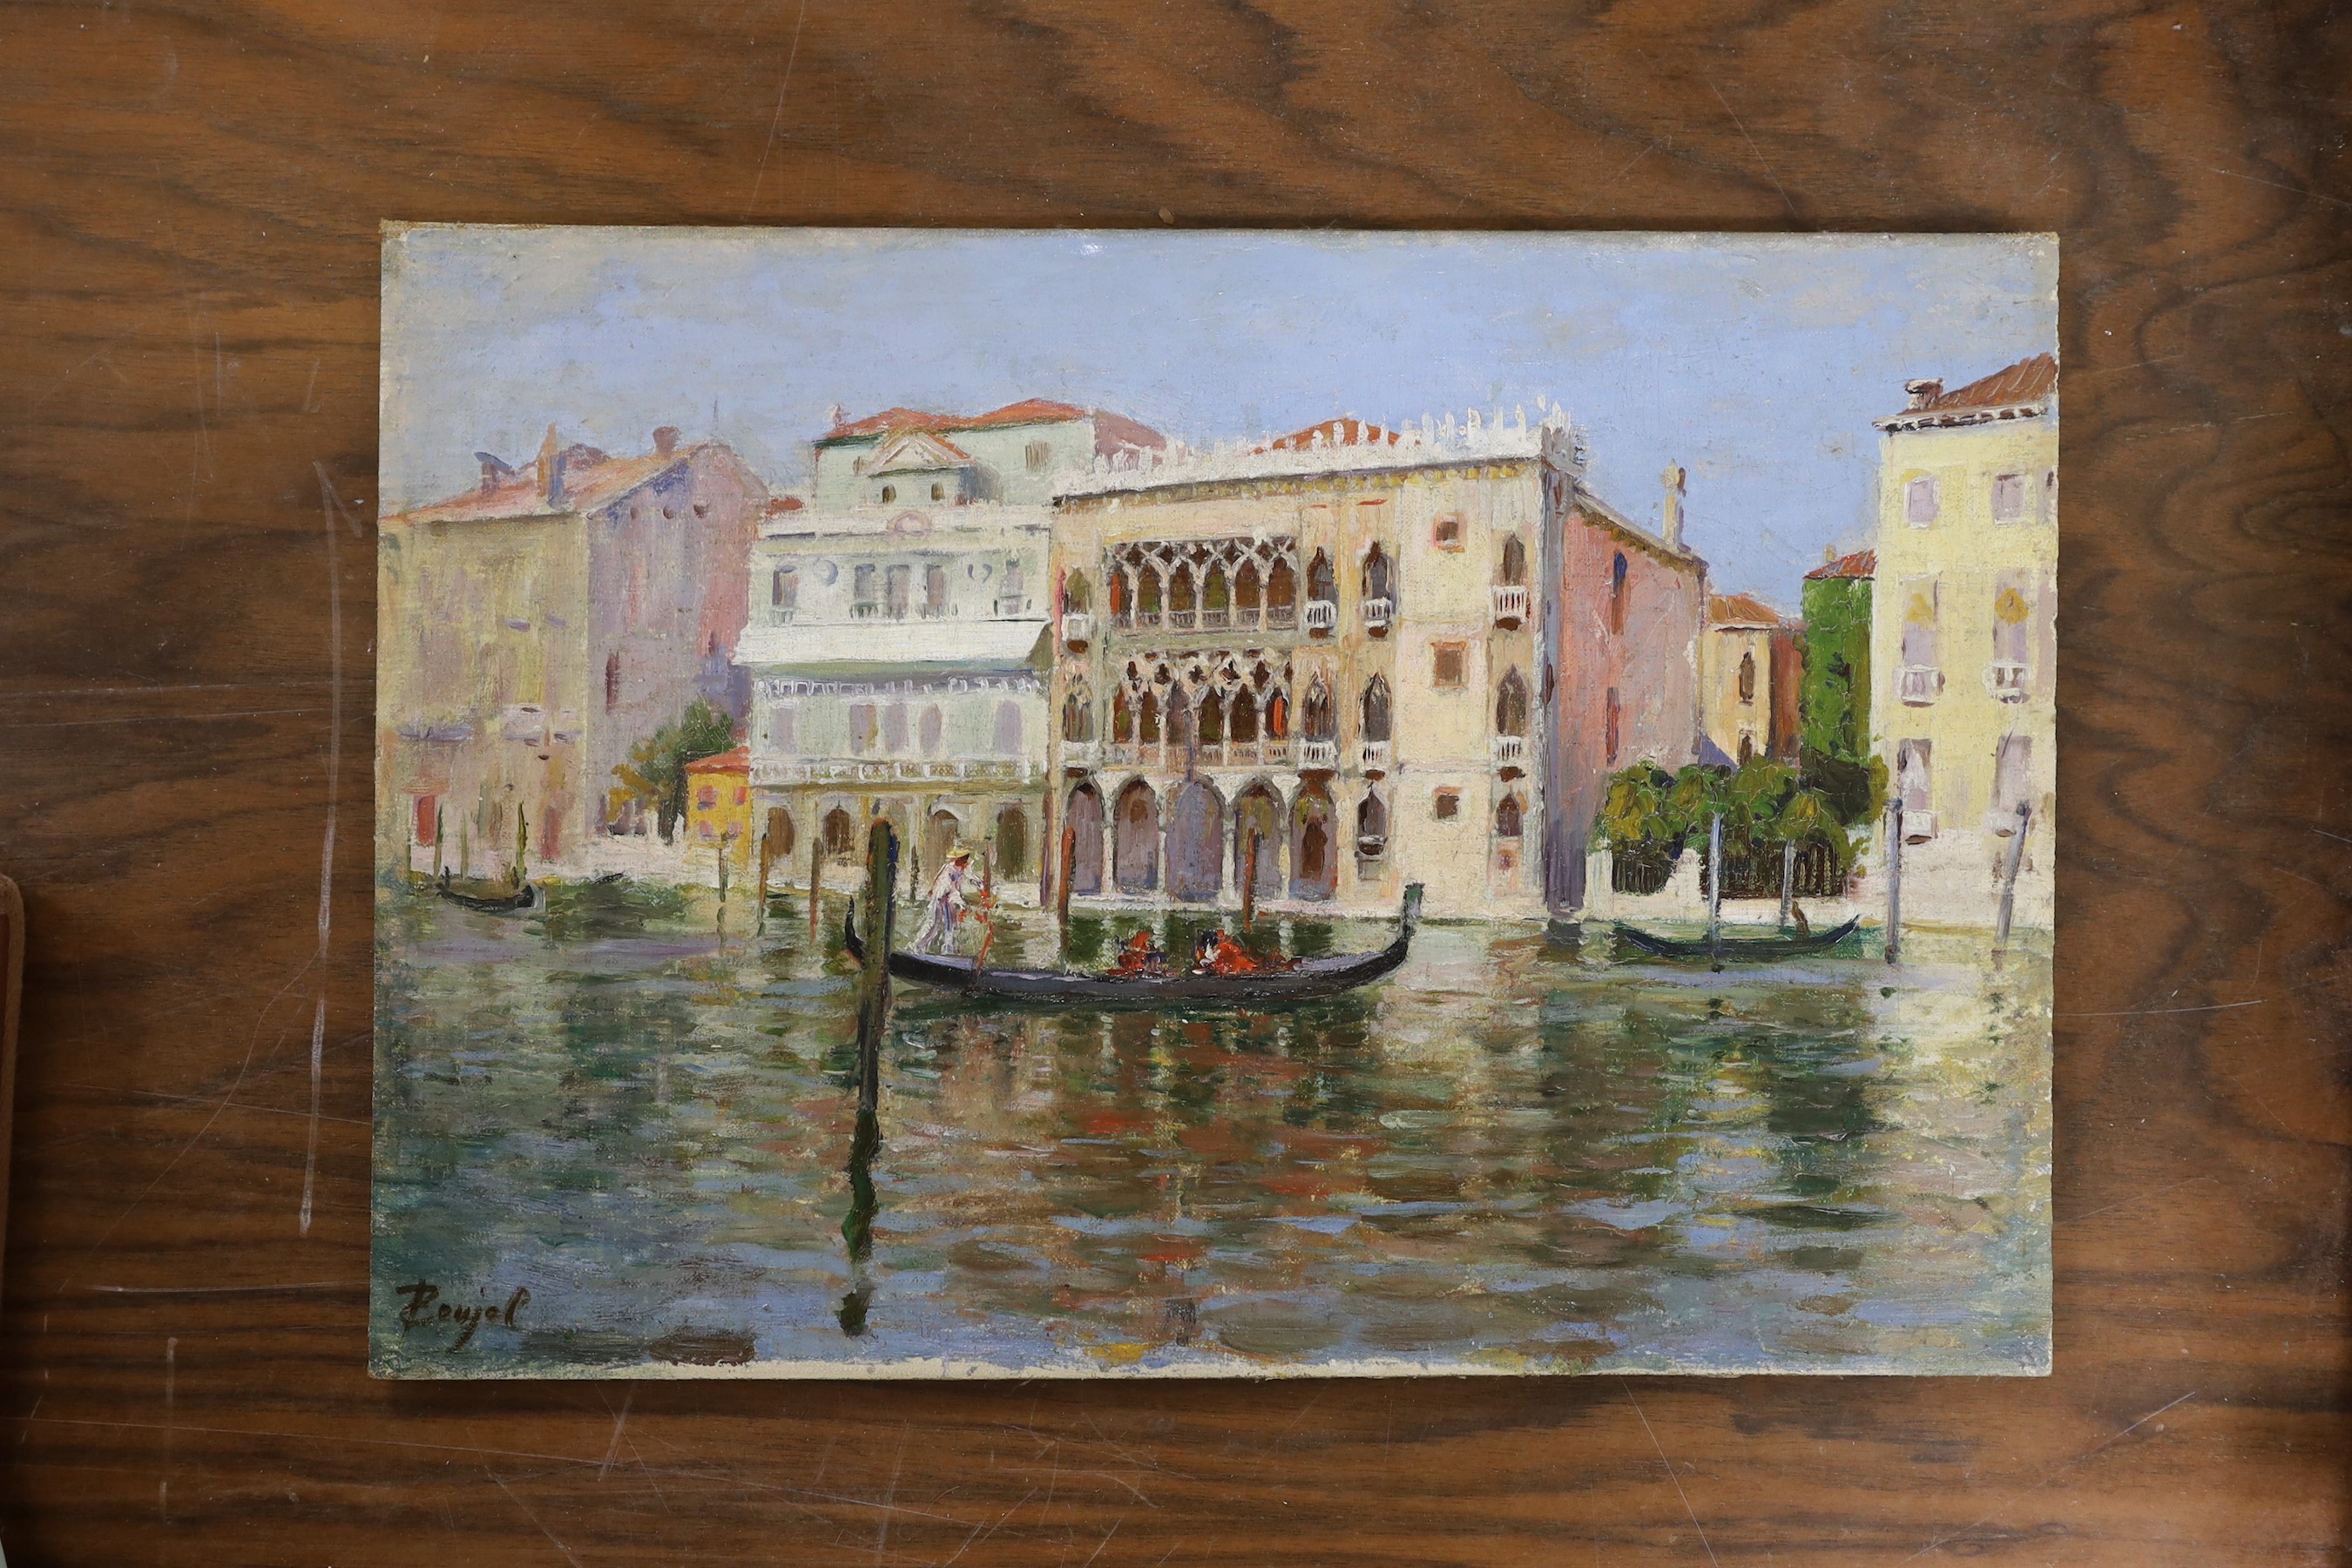 C. Poujal, oil on board, Gondola on a Venetian canal, signed, 24 x 35cm, unframed